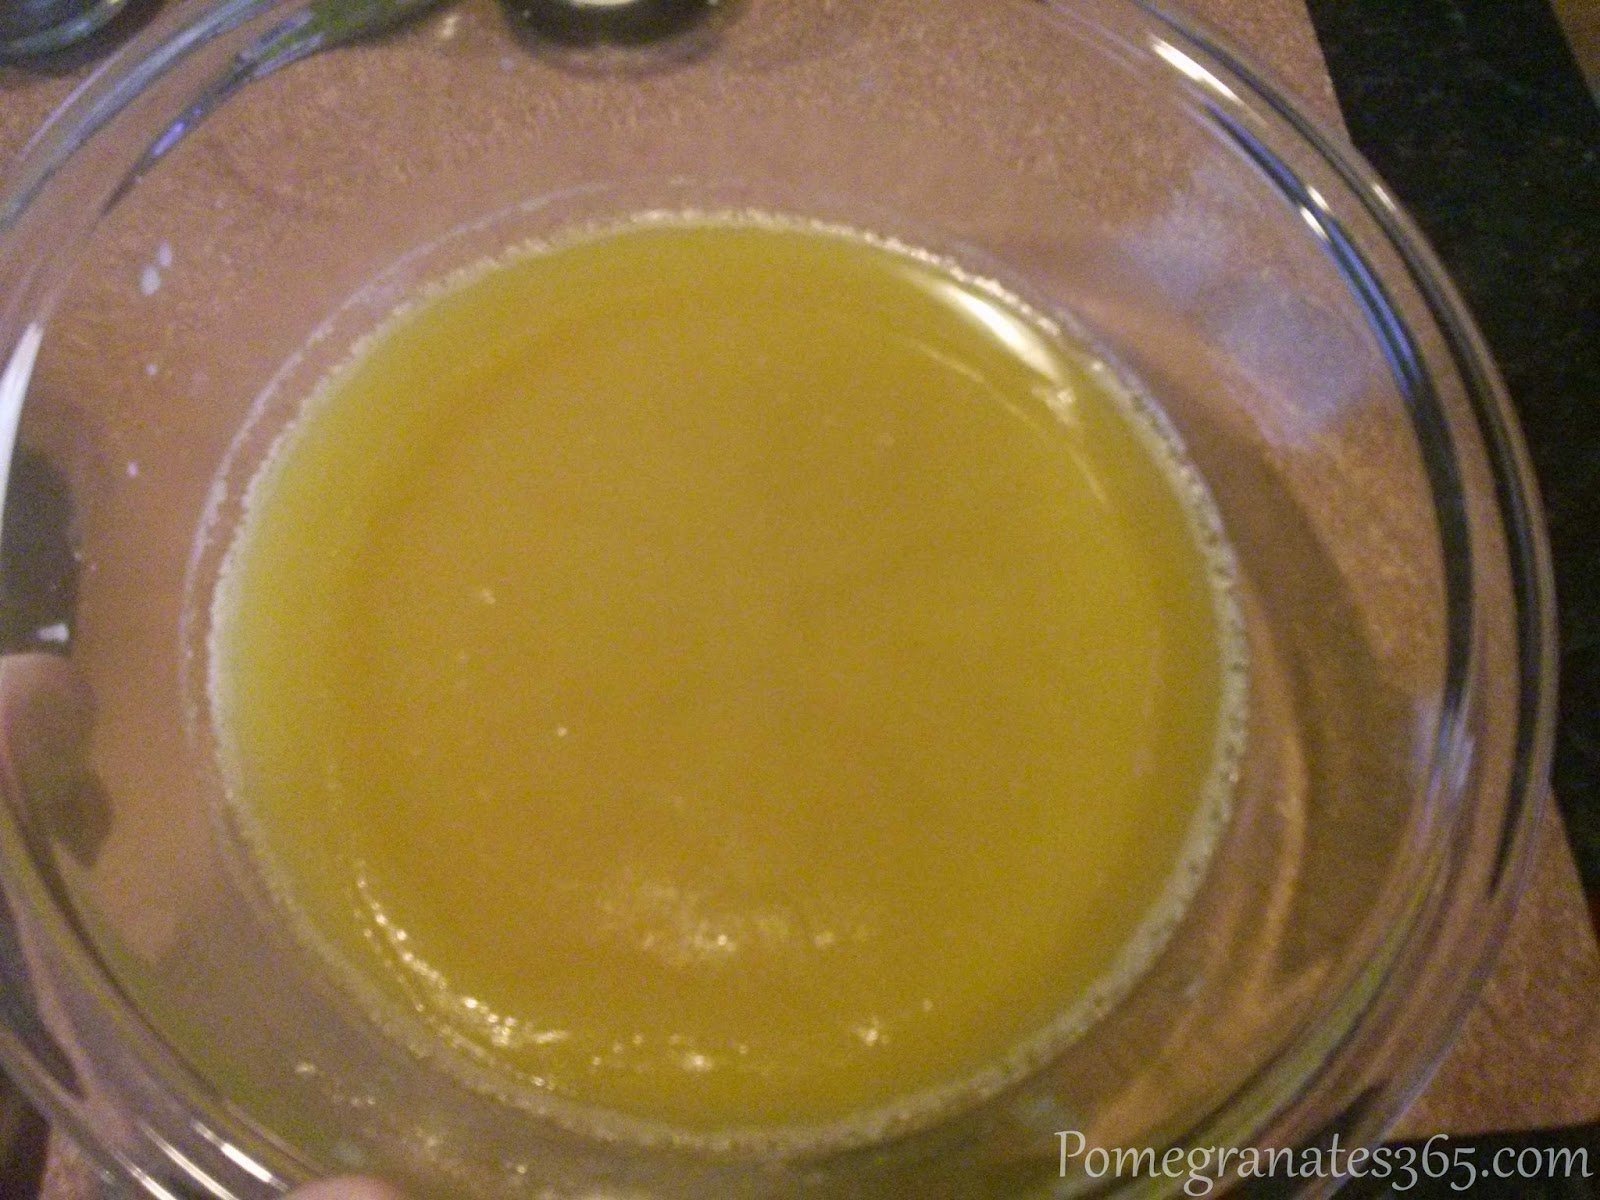 Belly butter oils set after refrigeration